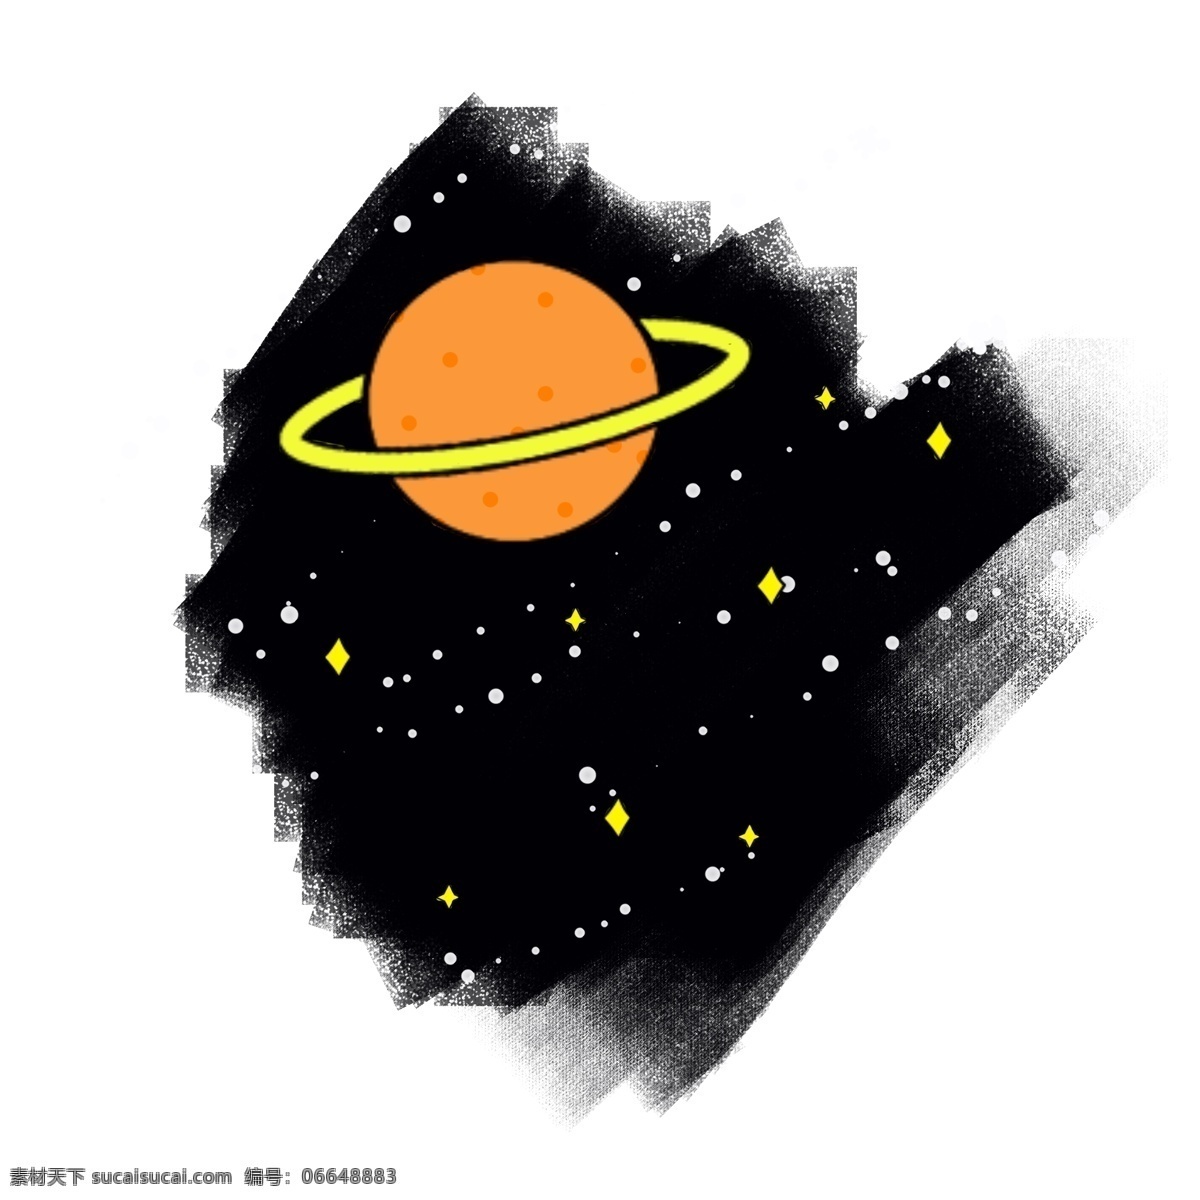 卡通 免 抠 简约 星球 png星球 星球png 卡通星球 宇宙星系 星球卡通 星球宇宙 宇宙 银河